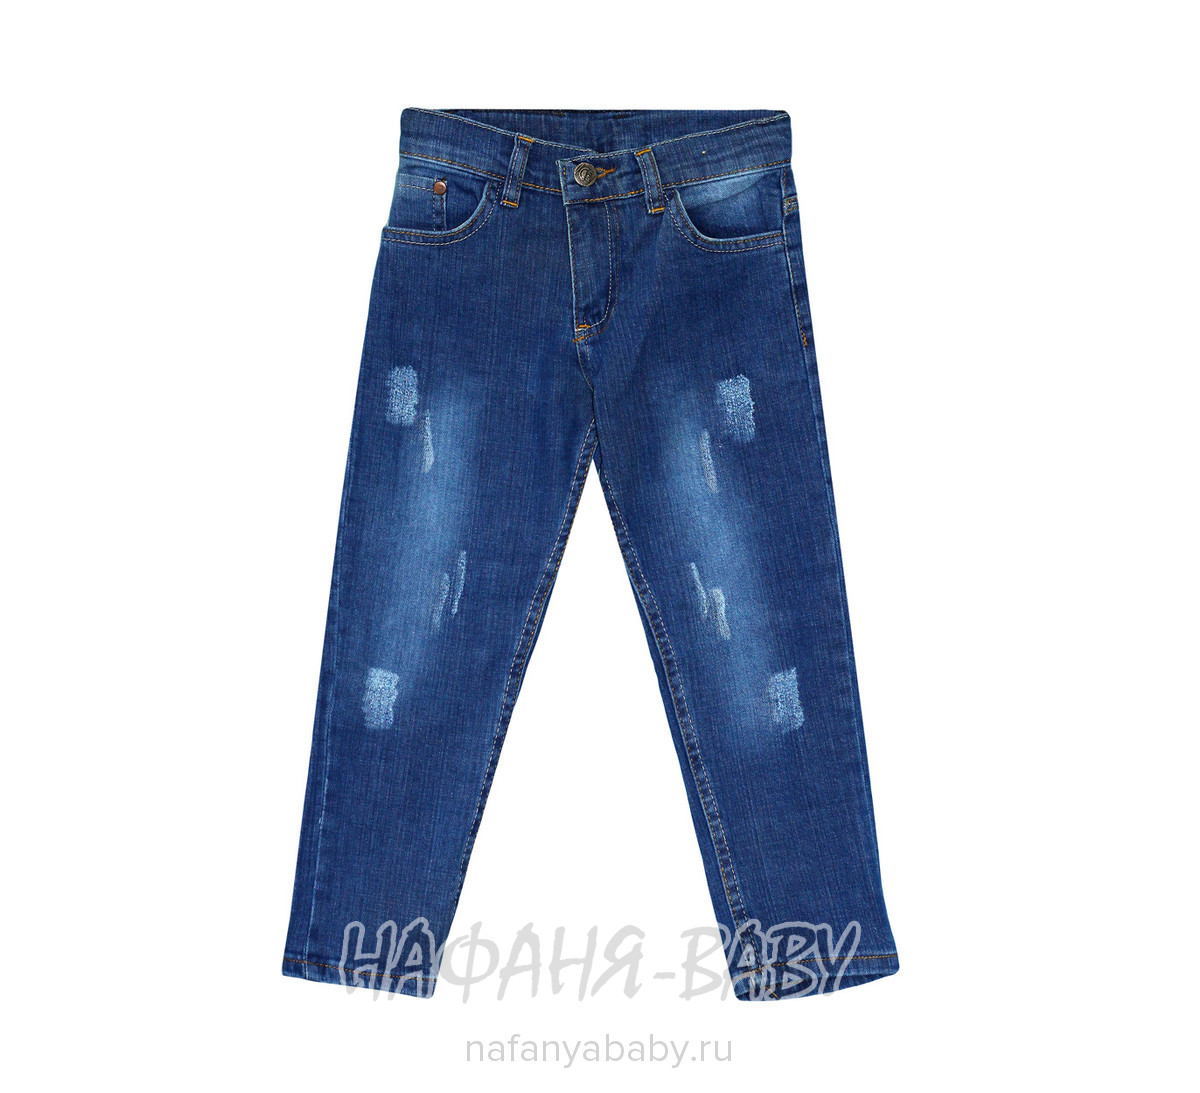 Детские джинсы ARS JEANS арт: 4851 8-12, цвет синий, оптом Турция